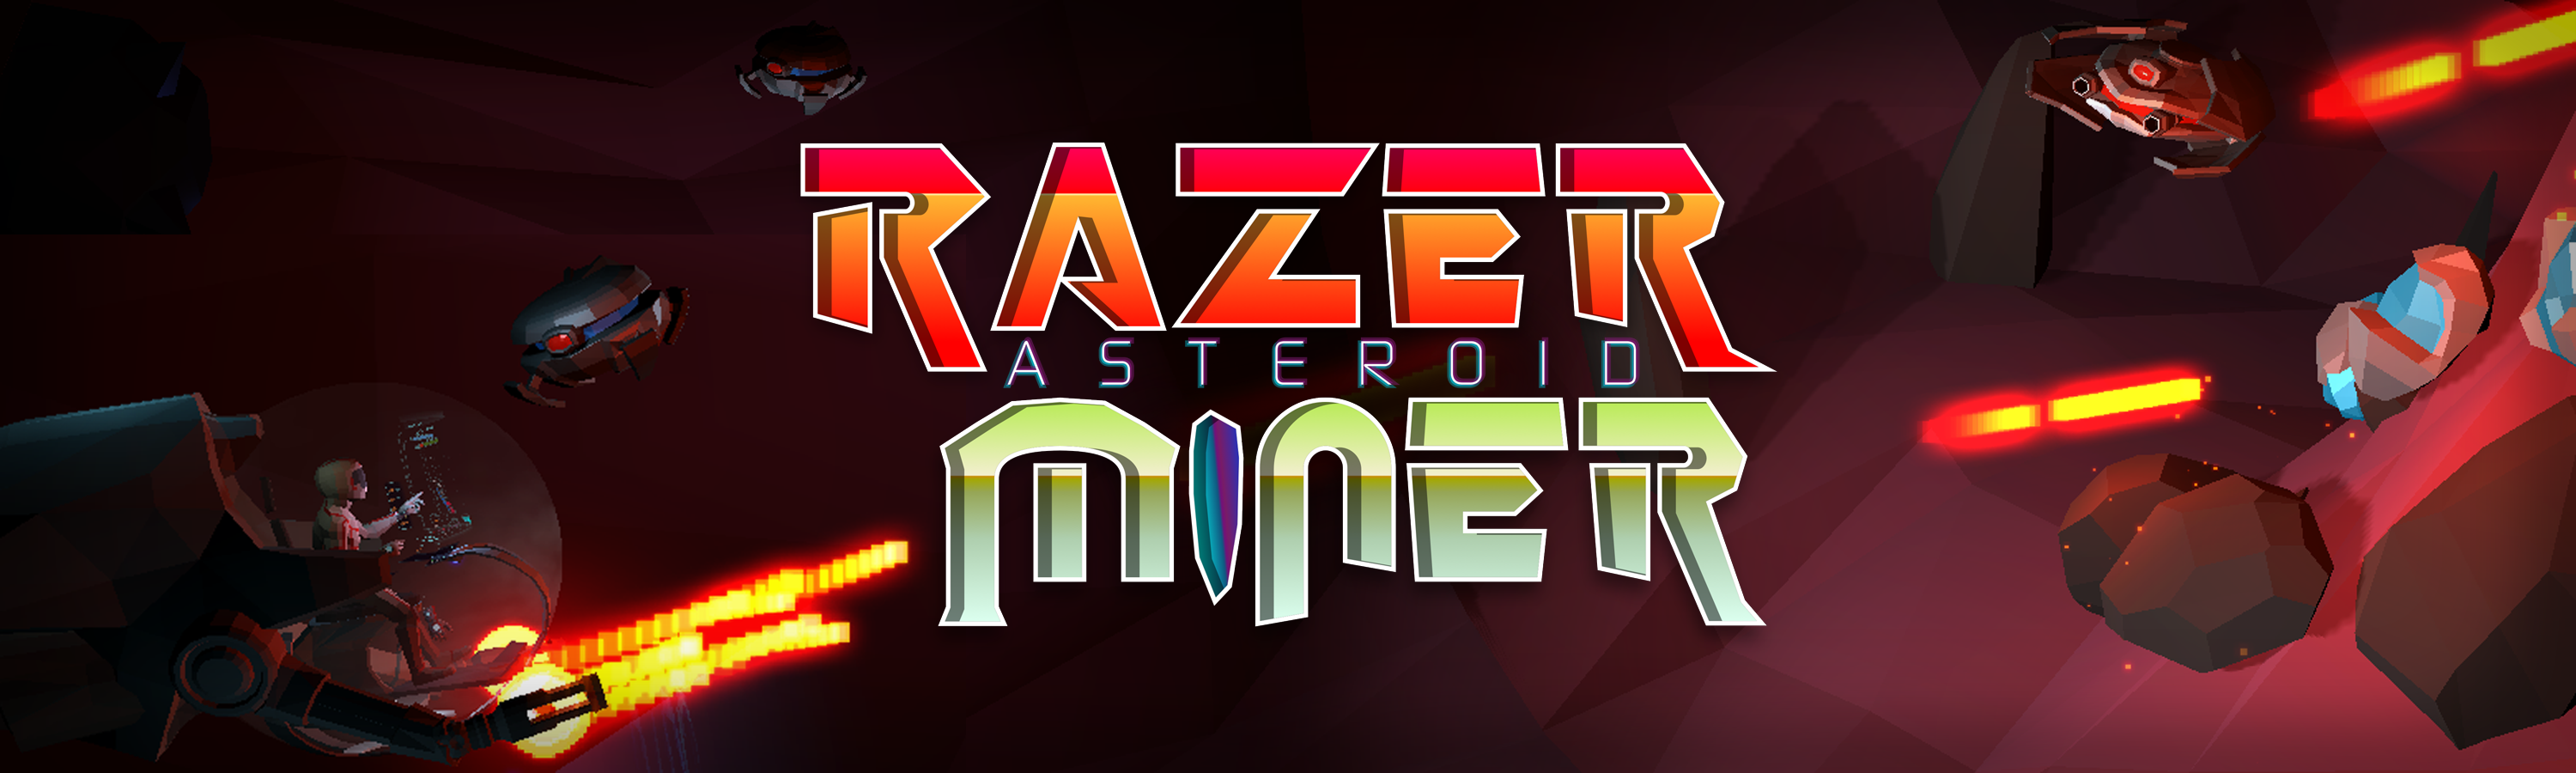 Razer Asteroid Miner